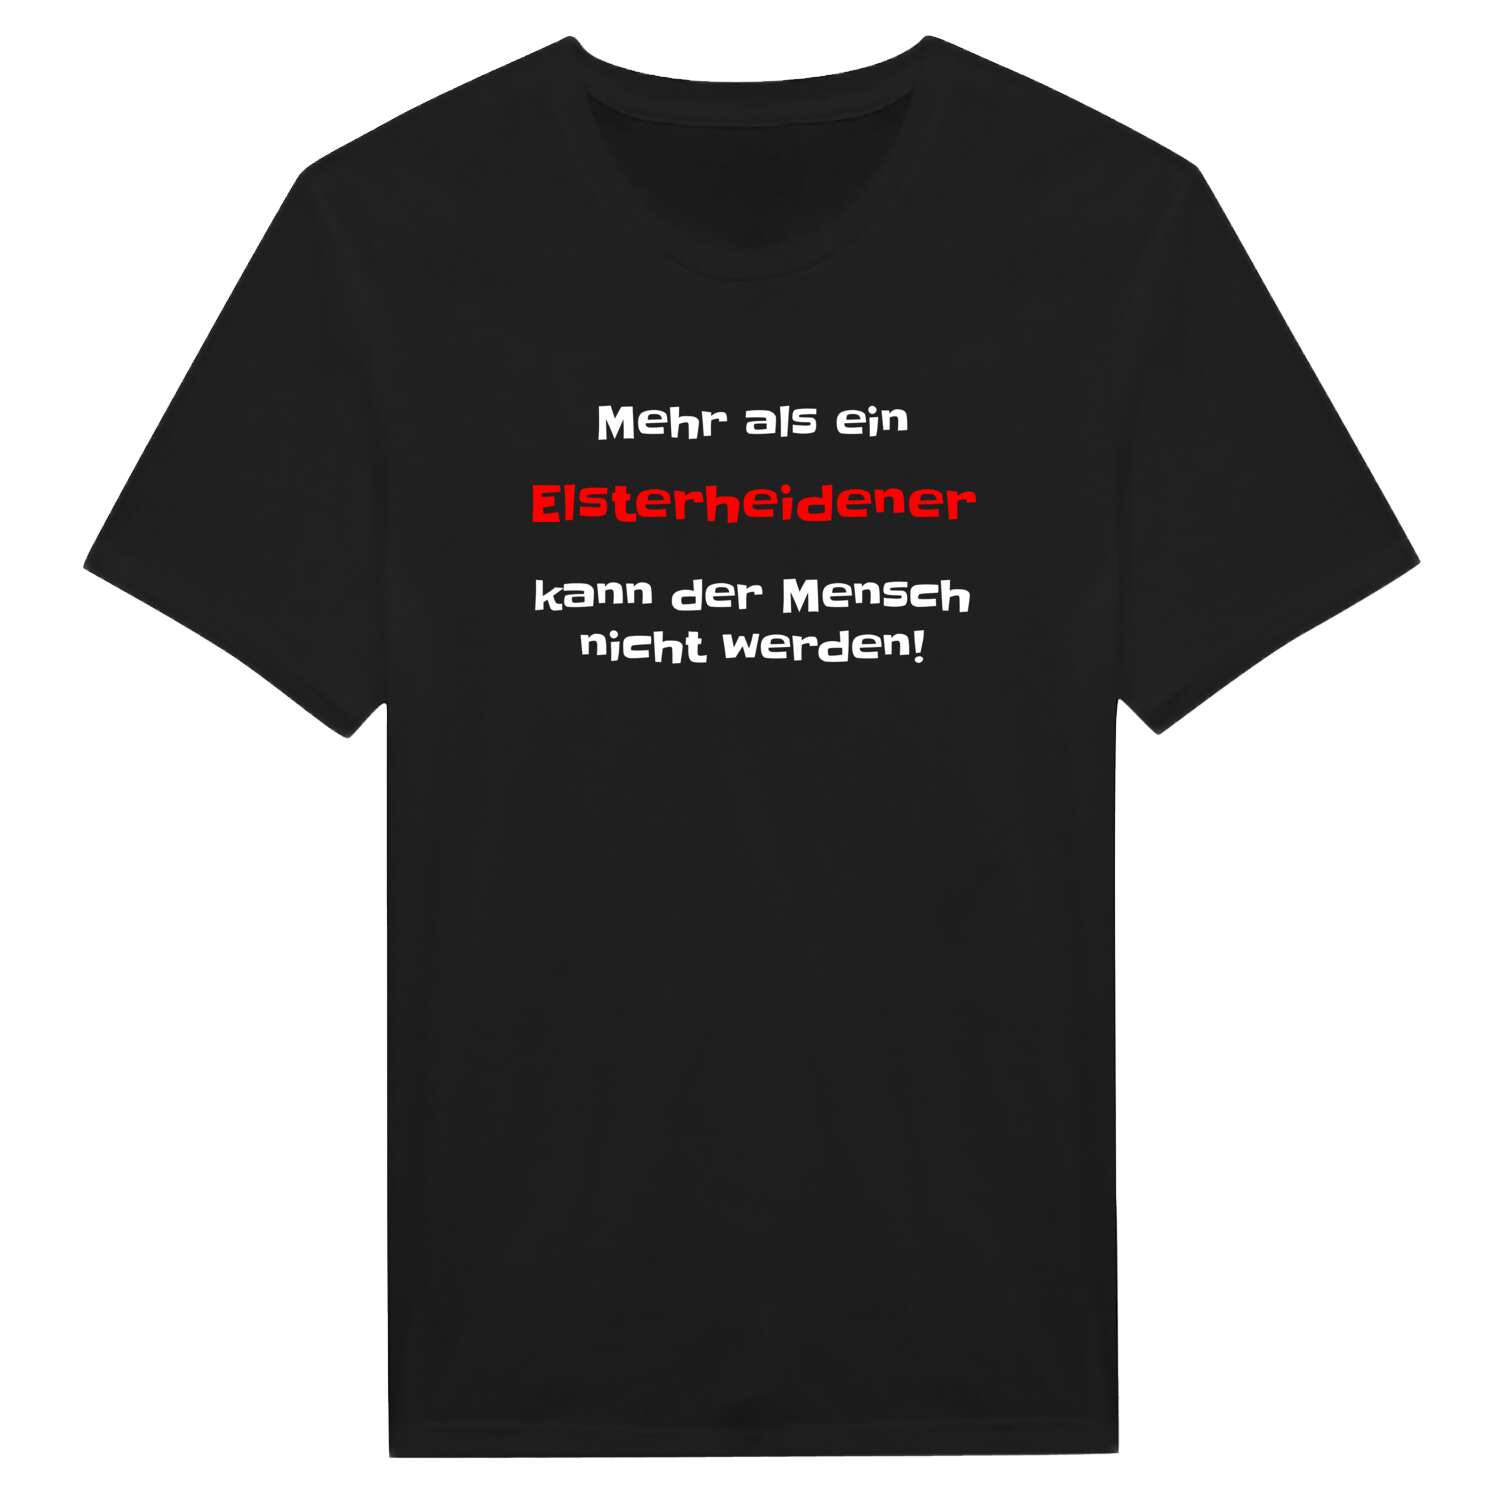 Elsterheide T-Shirt »Mehr als ein«